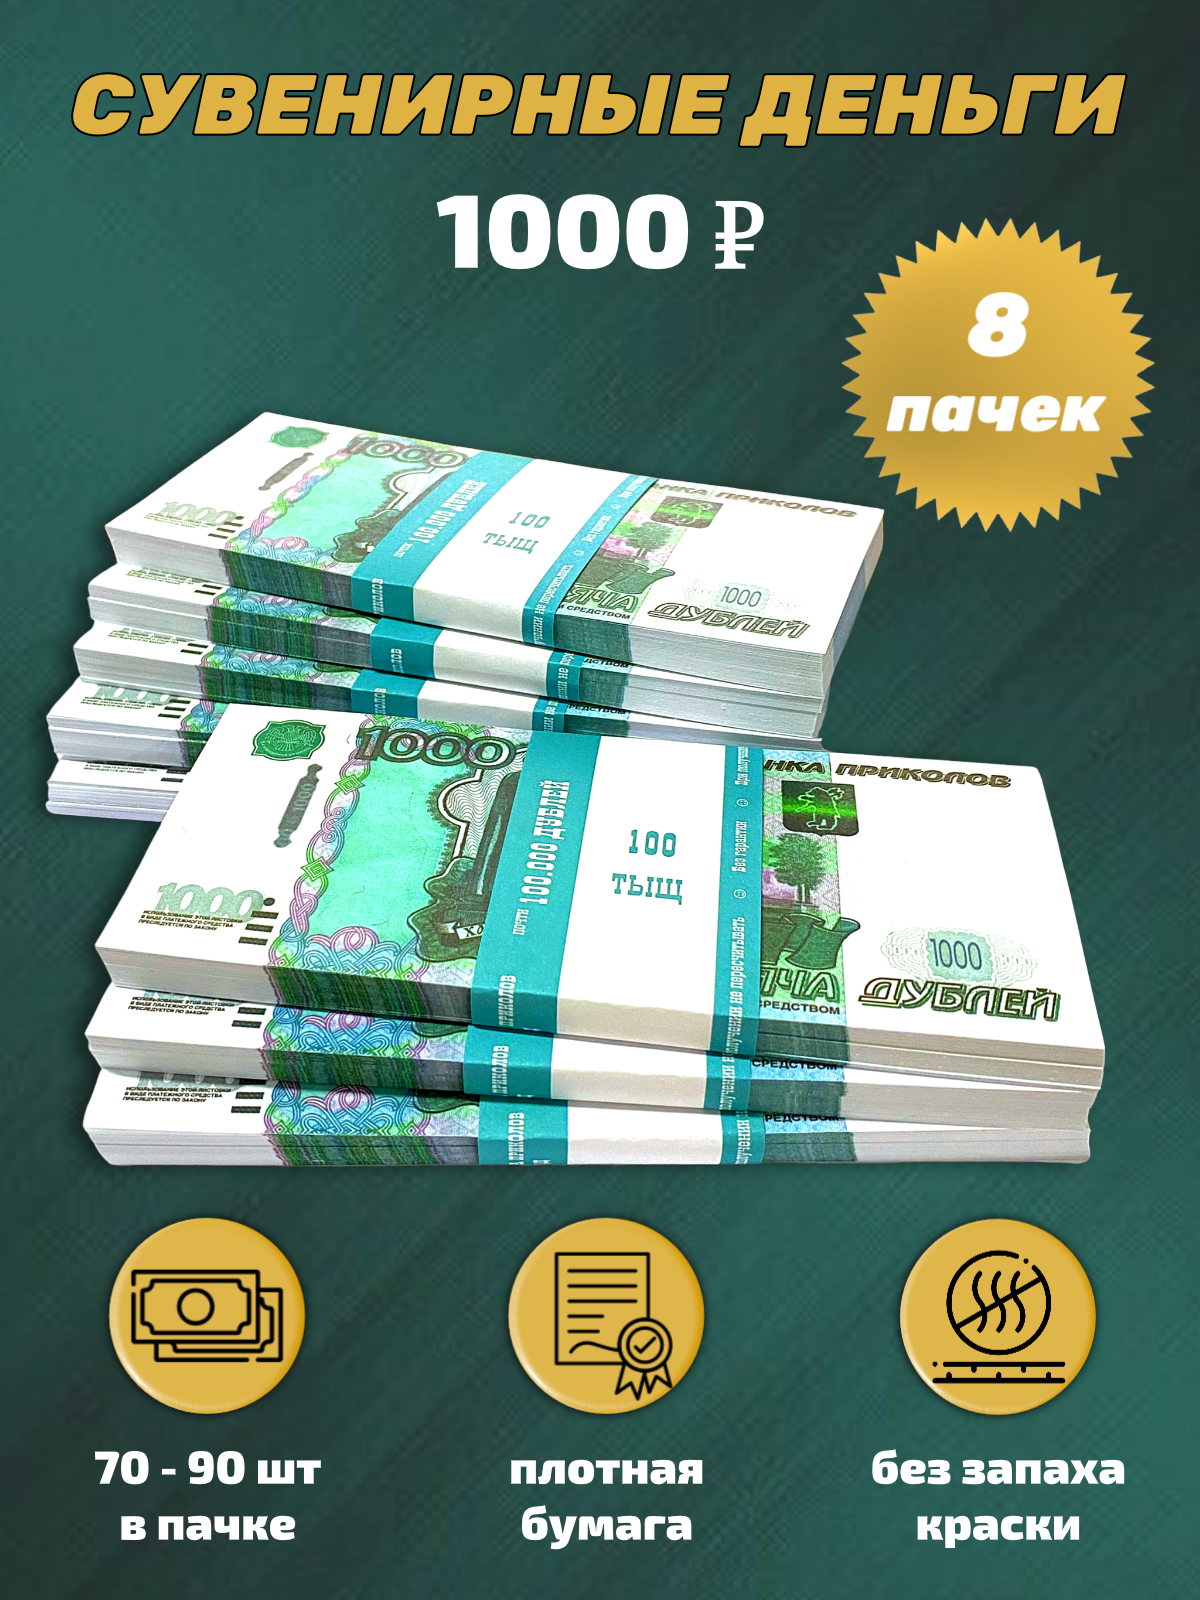 Сувенирные деньги, набор 1000 руб - 8 пачек